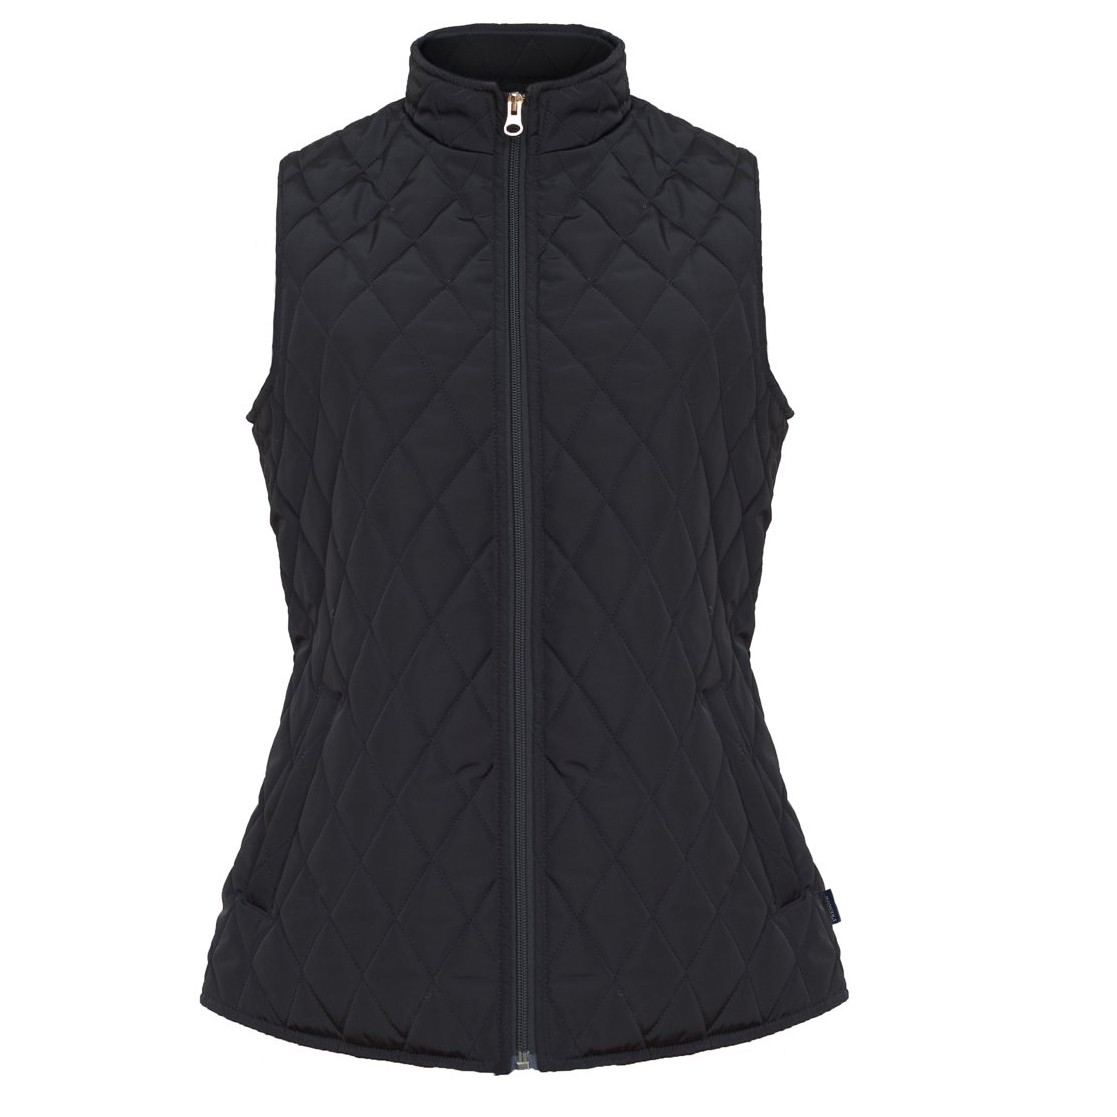 Unisex Fine Polyester Vest- Leon Style - Black Color